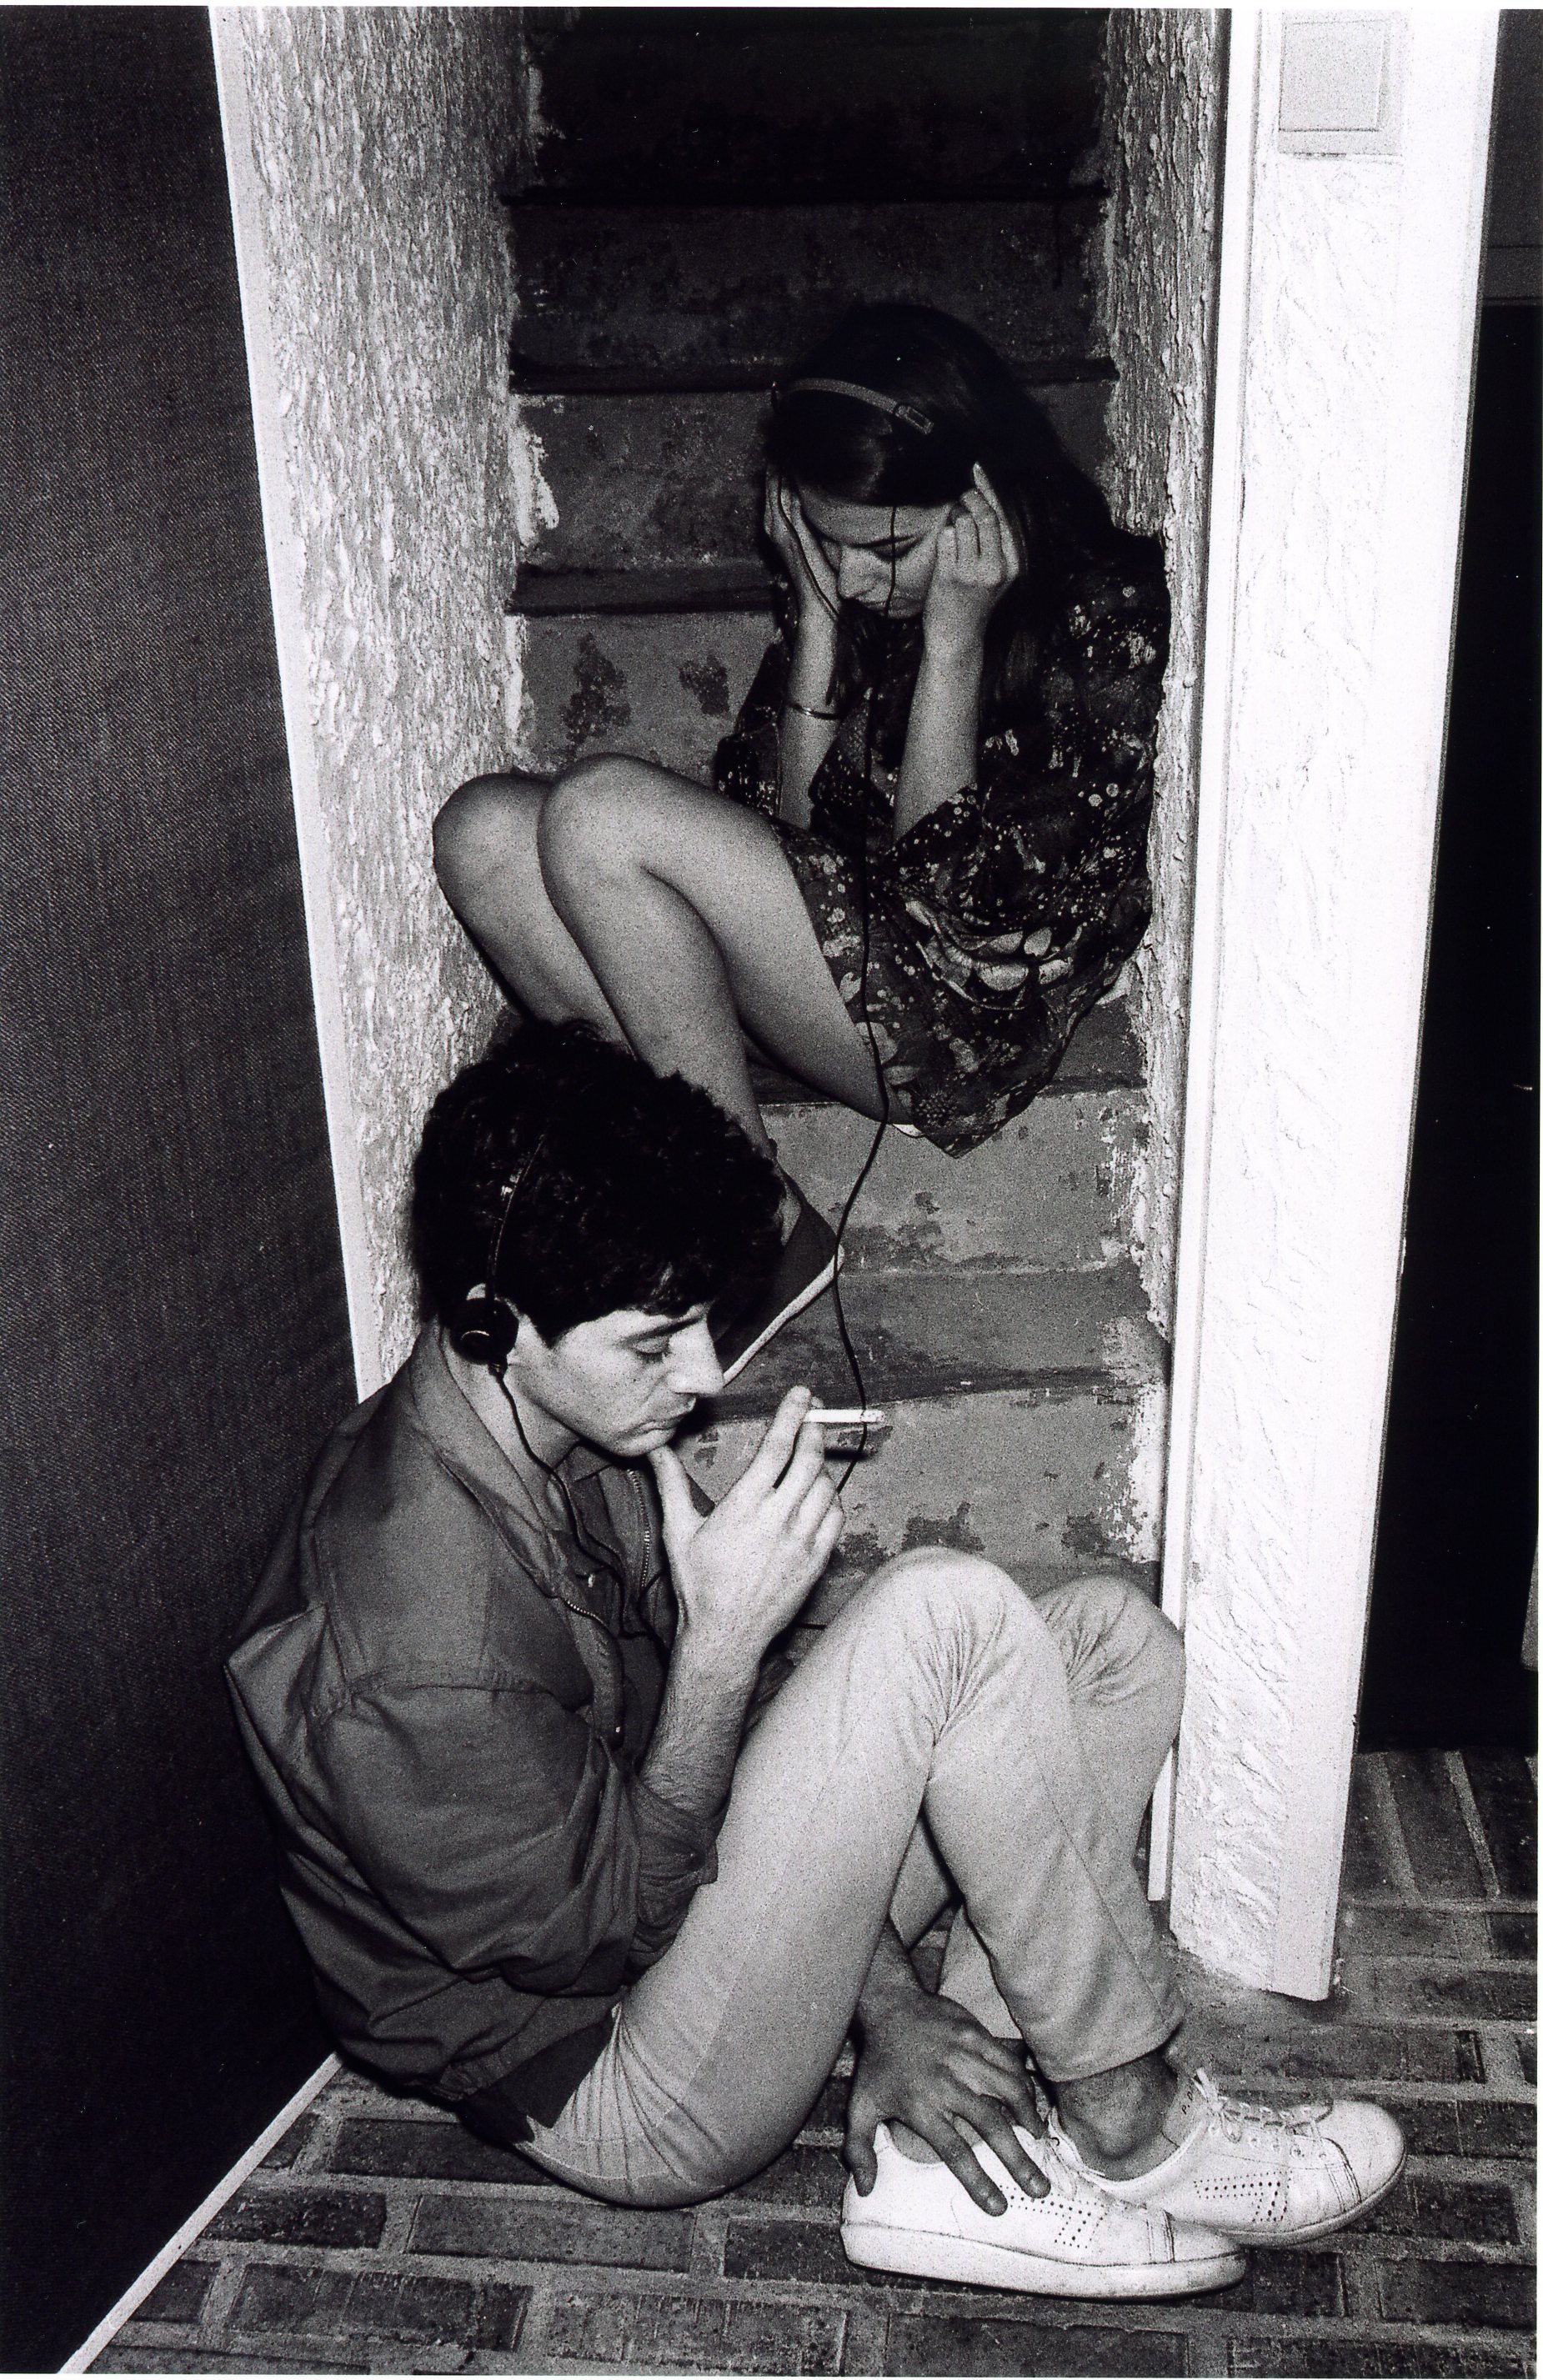 Étienne Daho et Elli Medeiros, Paris, 1981 @ Pierre René-Worms 

